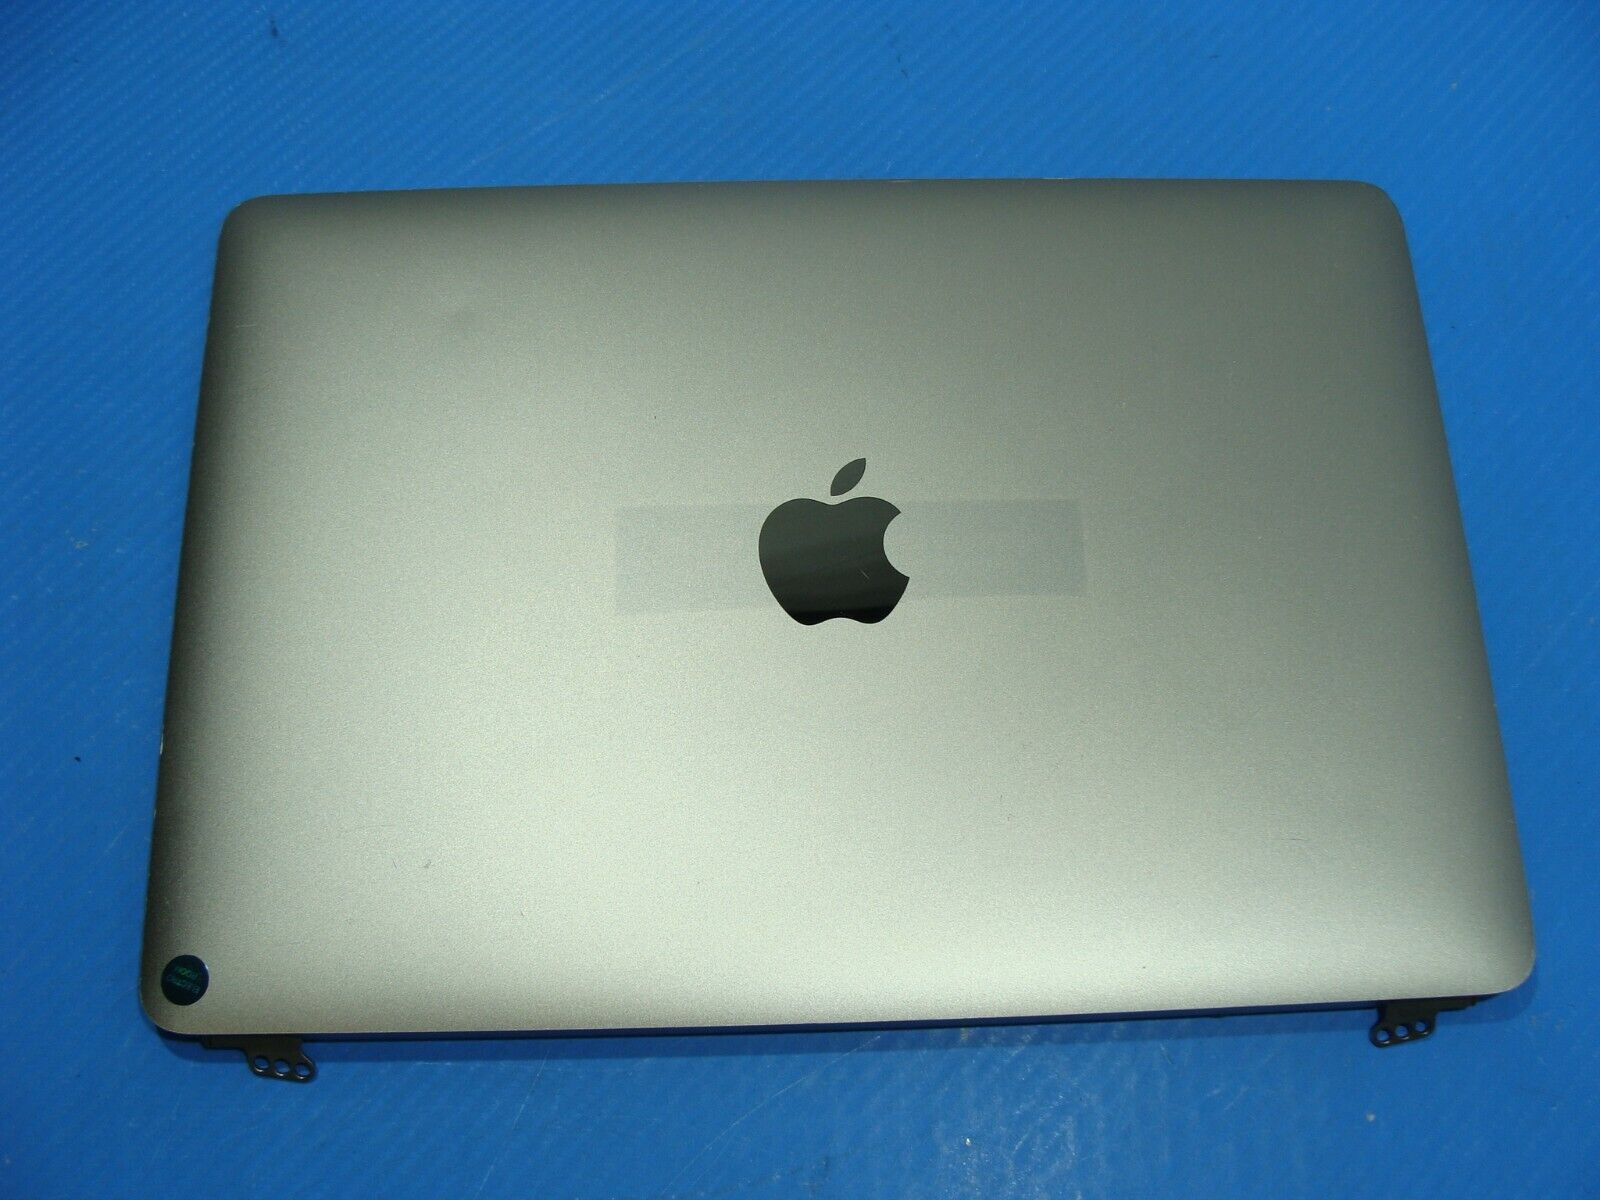 MacBook A1534 Early 2015 MJY32LL/A 12